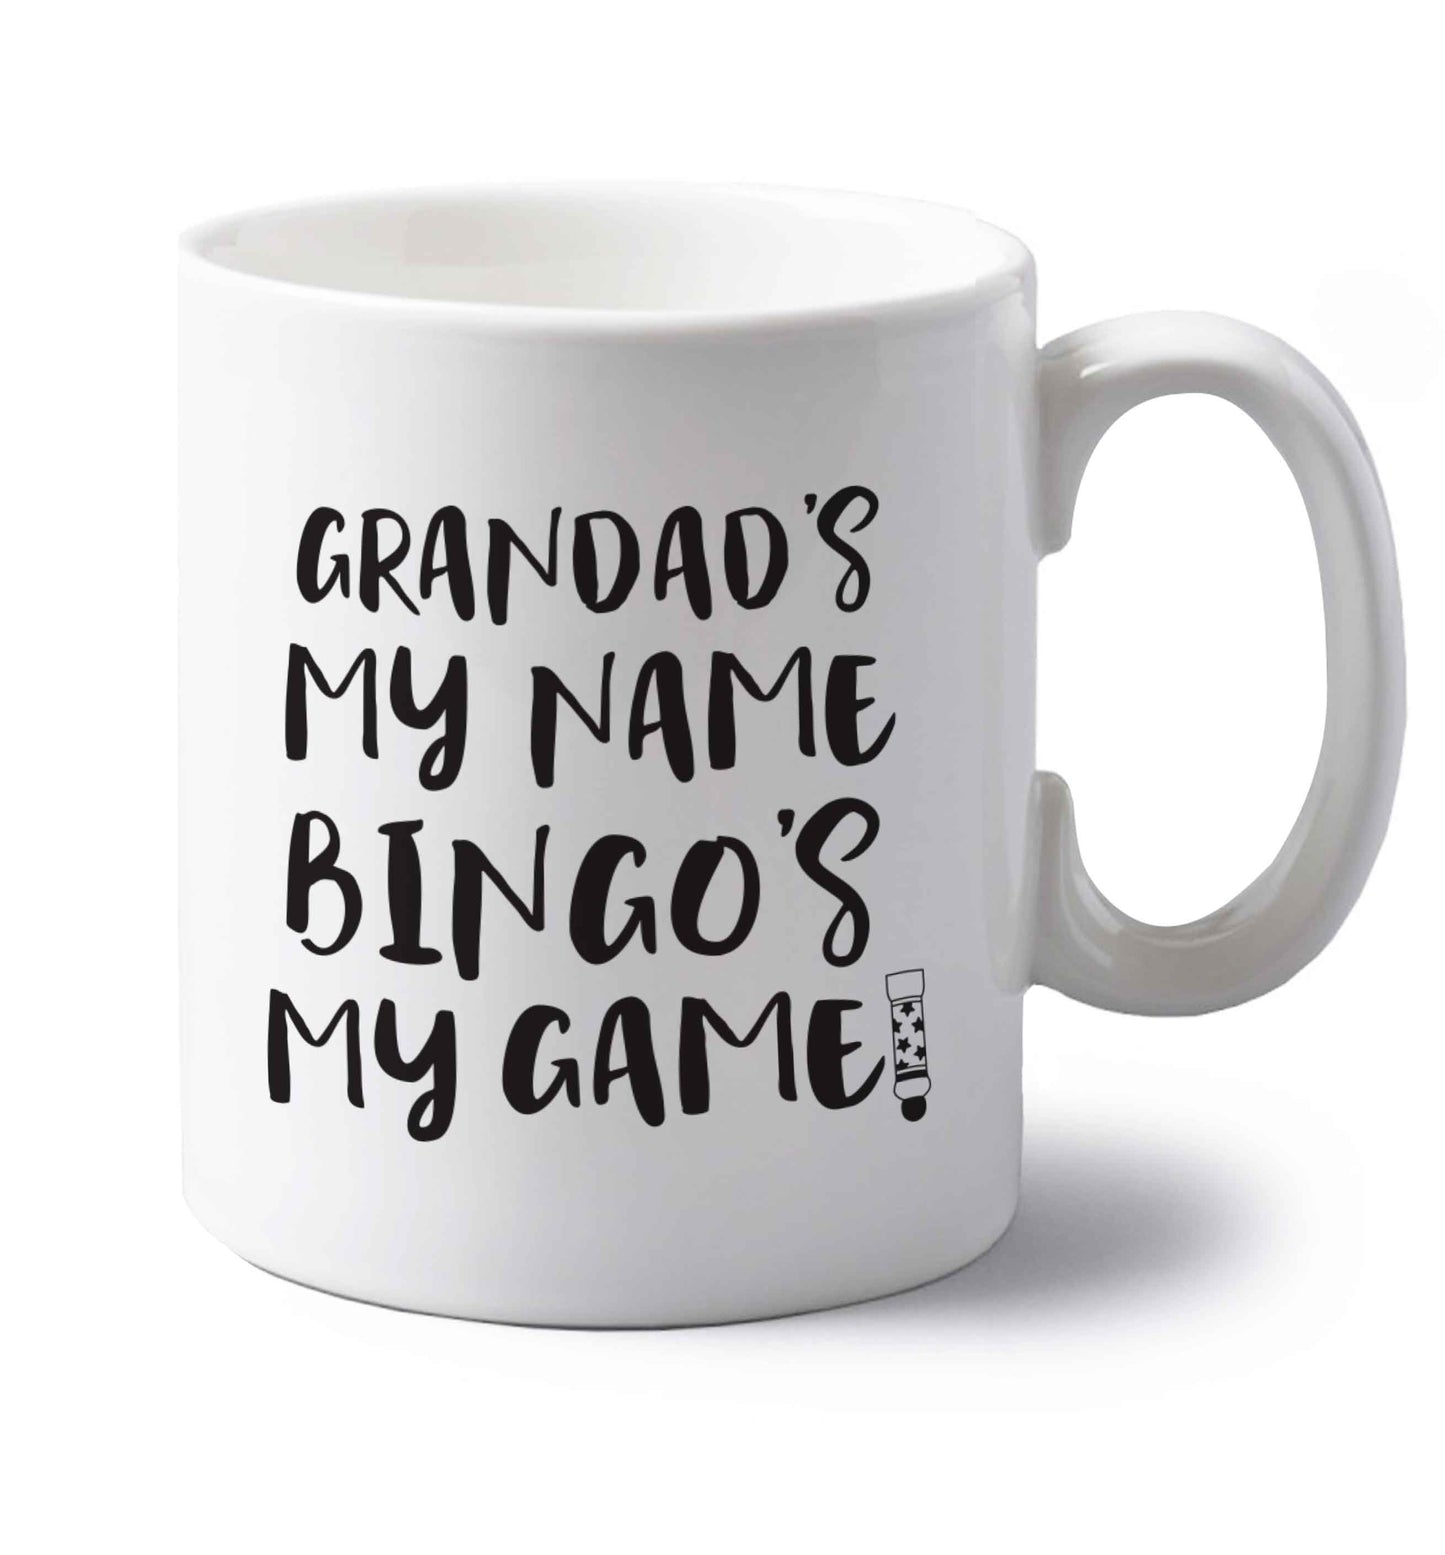 Grandad's my name bingo's my game! left handed white ceramic mug 